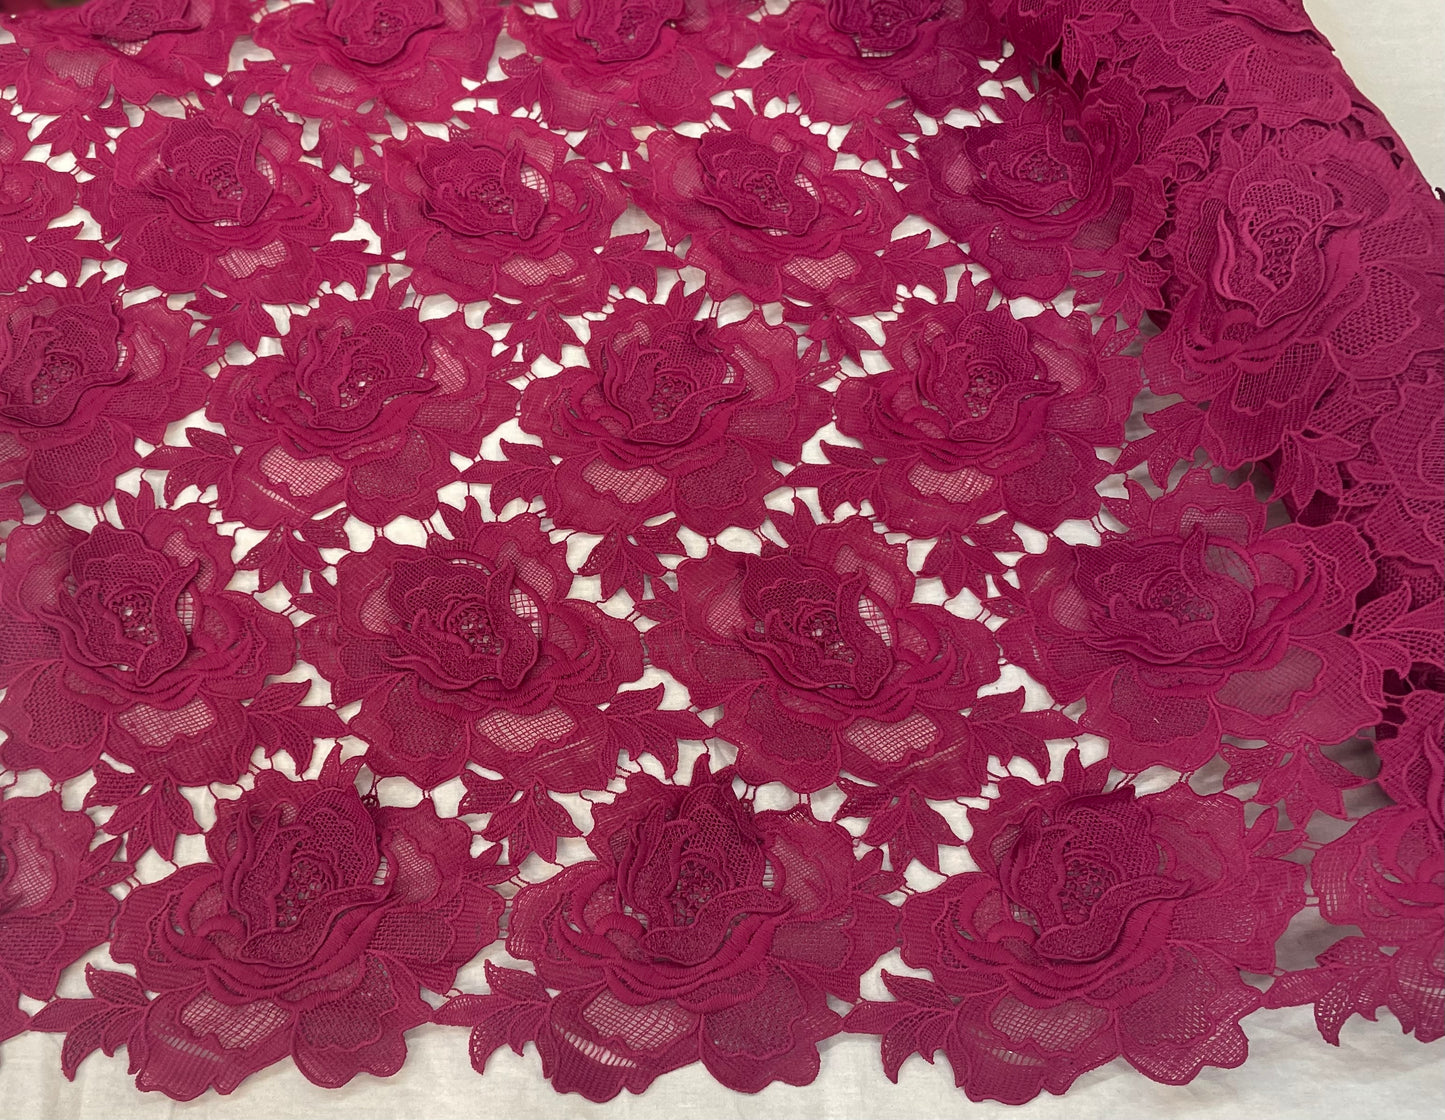 Floral Appliqued Cotton Lace - Fushia Pink